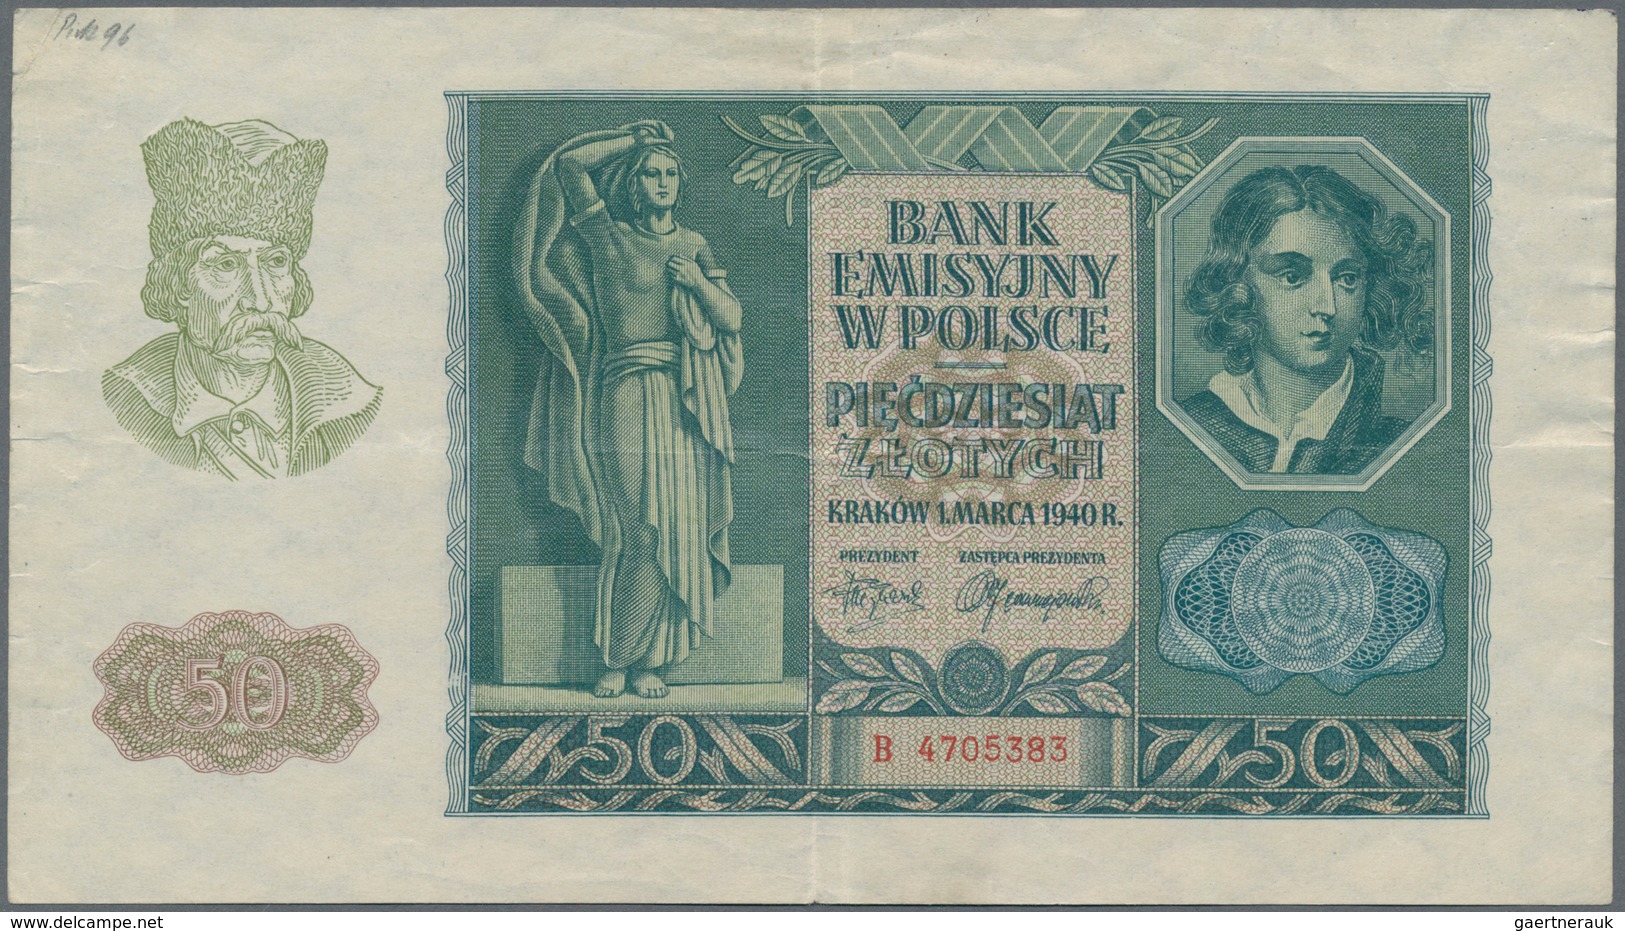 Deutschland - Nebengebiete Deutsches Reich: Generalgouvernement Polen, lot mit 9 Banknoten, dabei ei